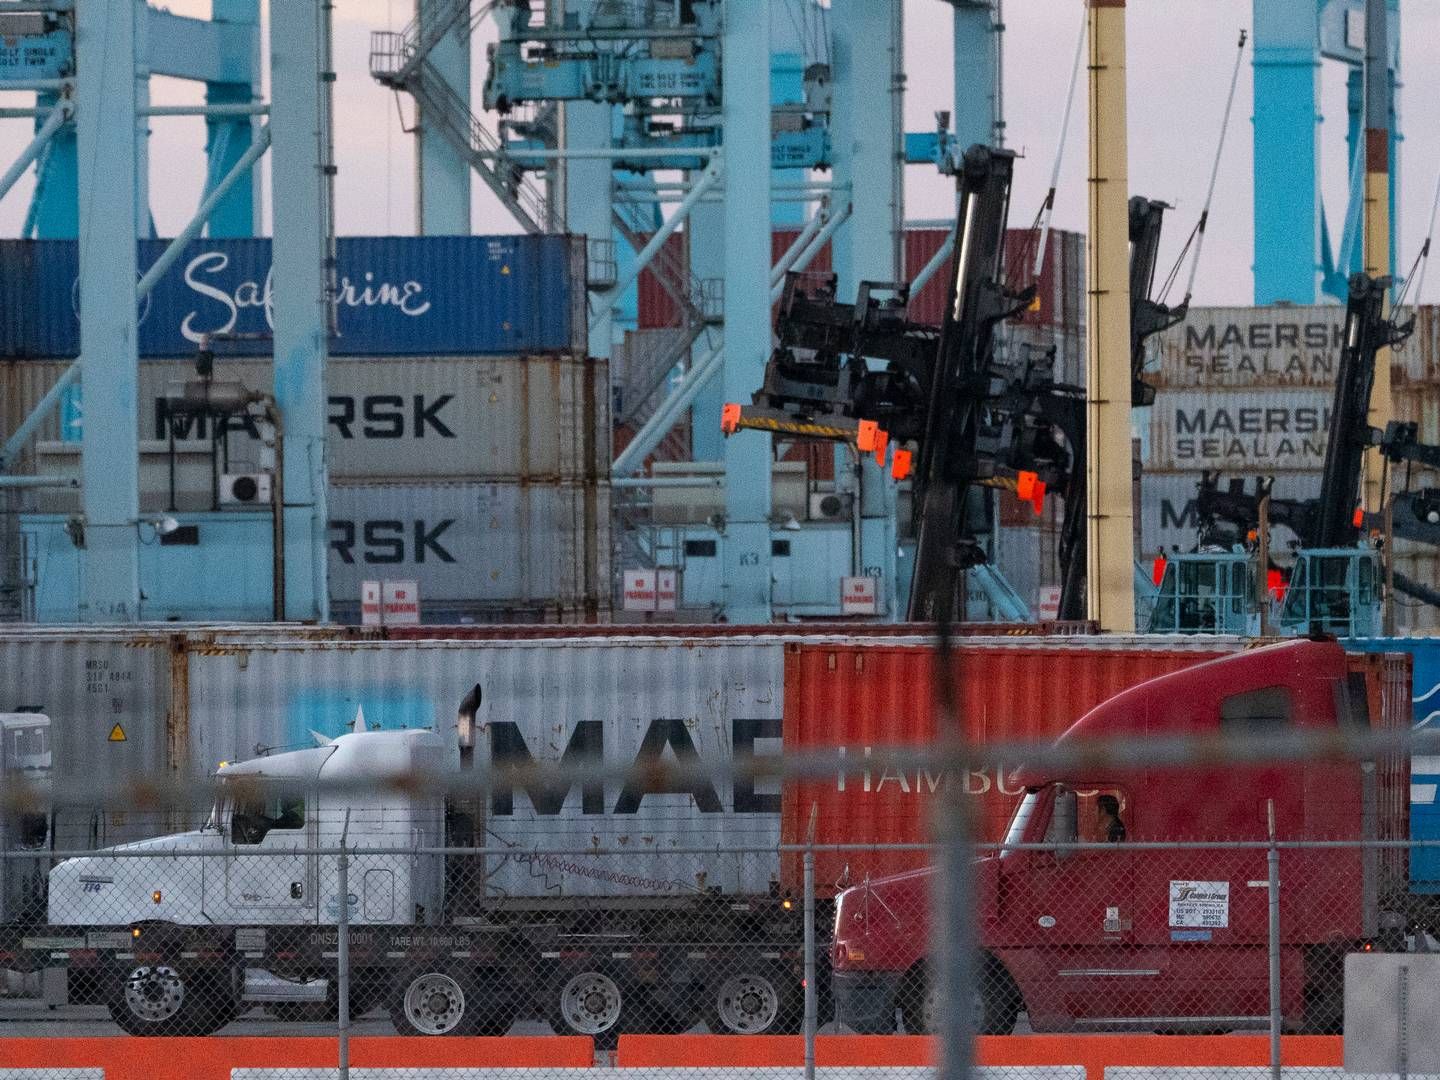 Overfaldet på skibskadetten skete på et skib, som blev drevet af Mærsks amerikanske datterselskab. Billedet har ingen relation til den konkrete sag. | Foto: Damian Dovarganes/AP/Ritzau Scanpix